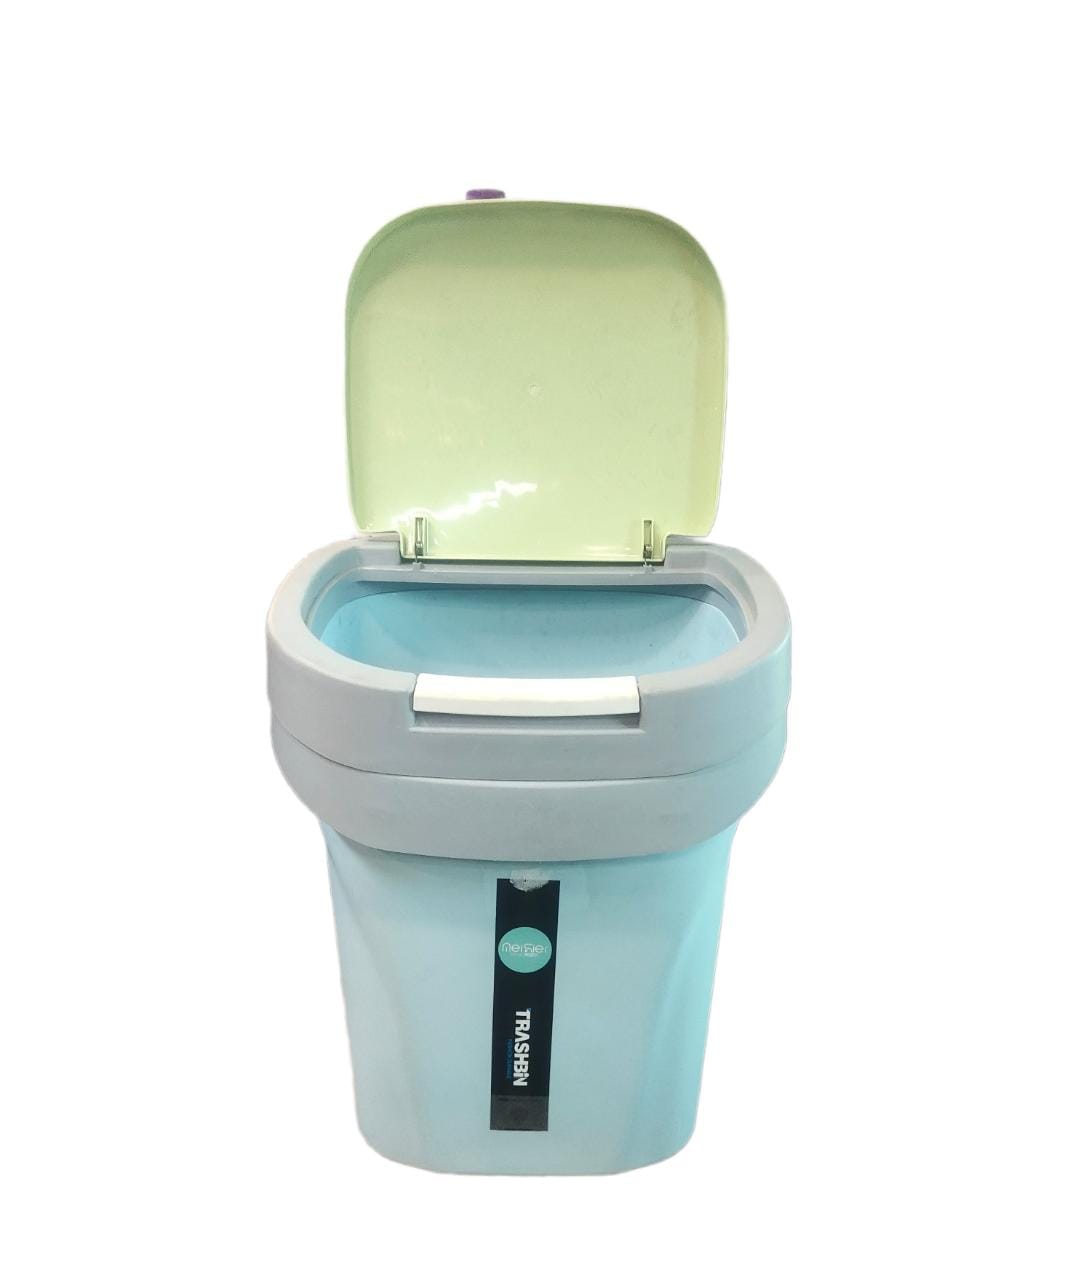 Plastic Flip Top Pedal Bin Office/Kitchen Wastepaper Dustbin Blue 495